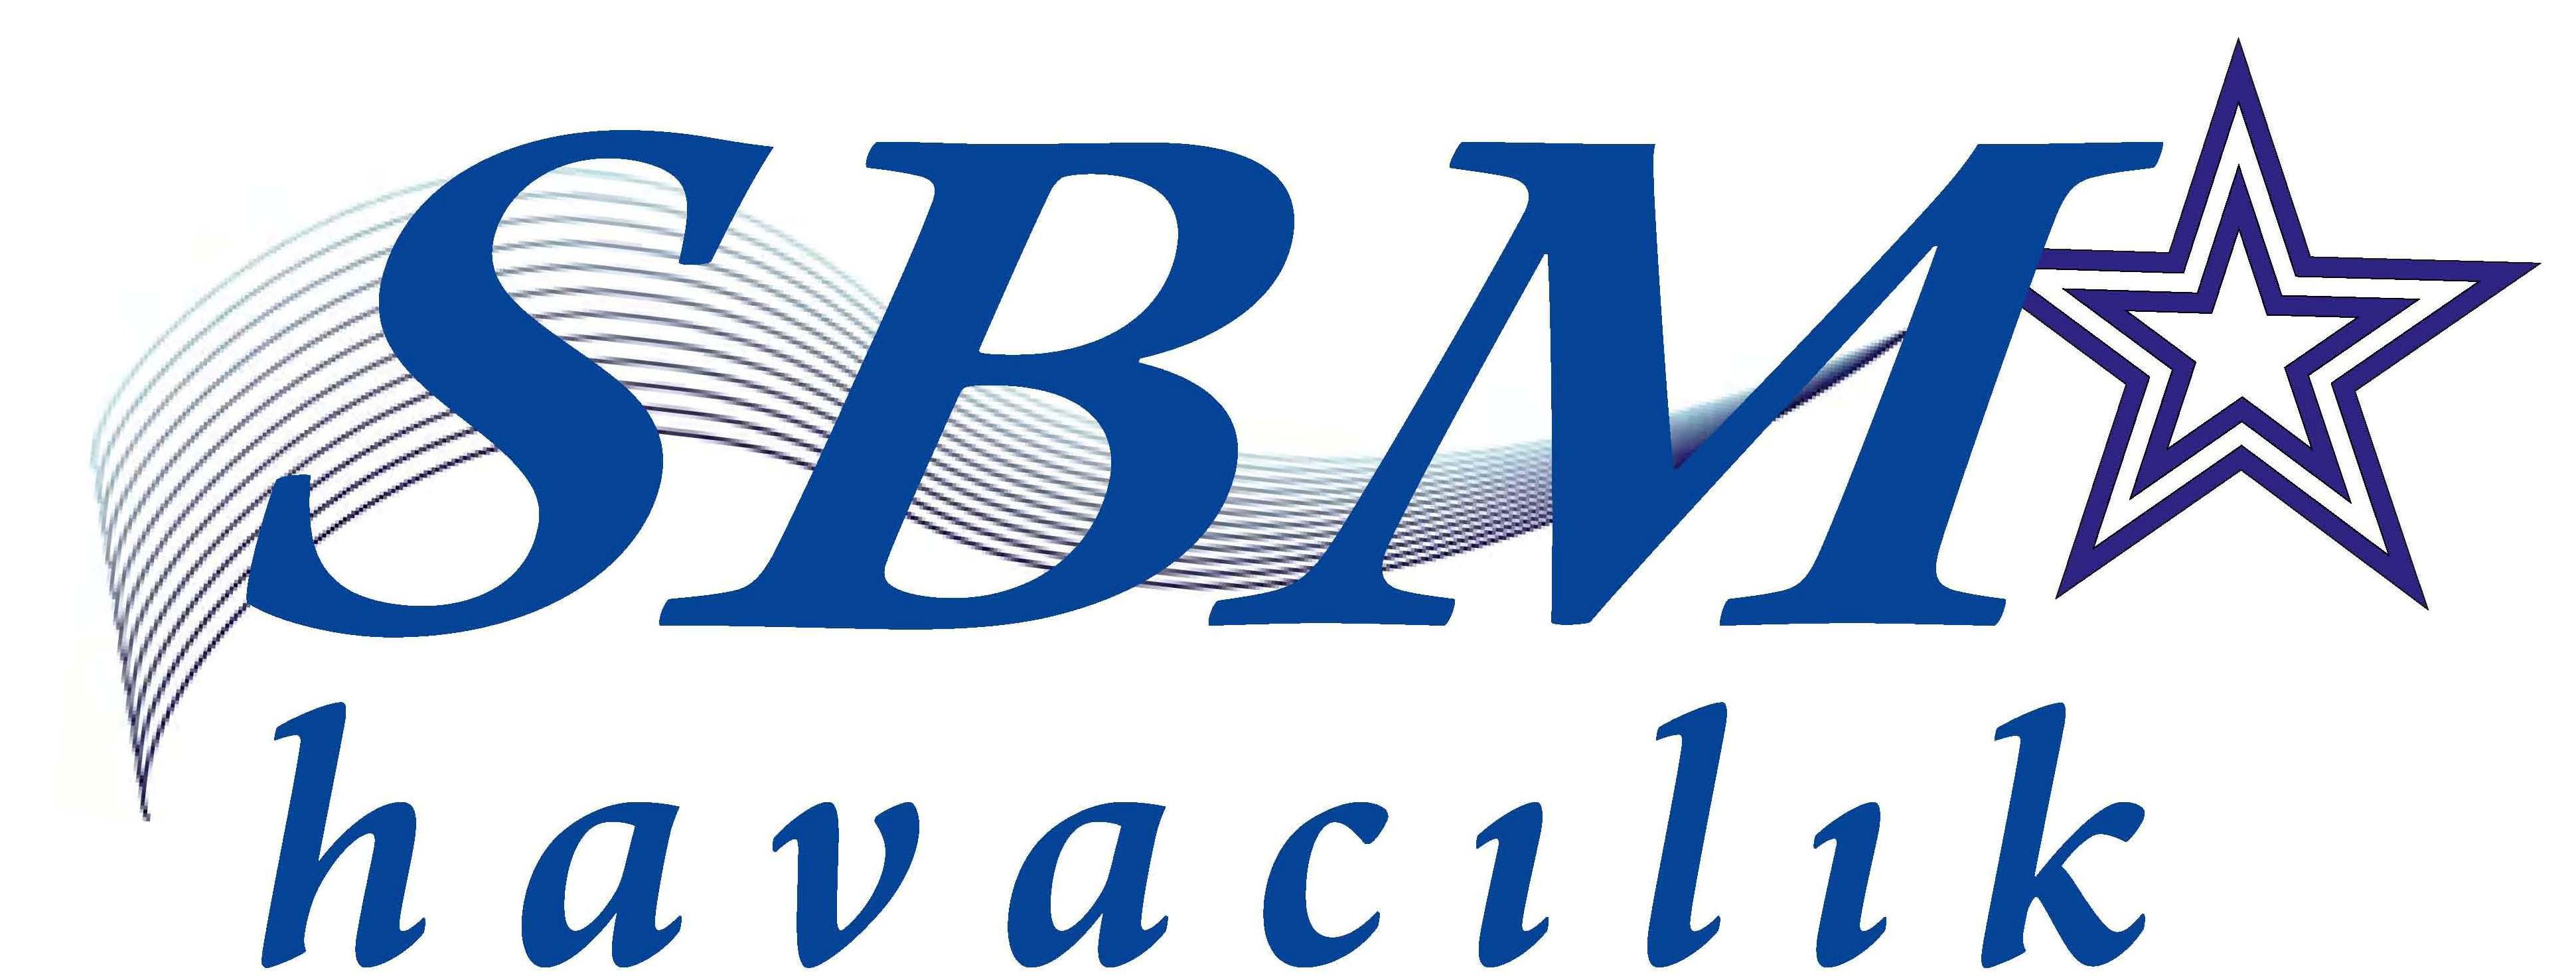 SBM HAVACILIK Logosu